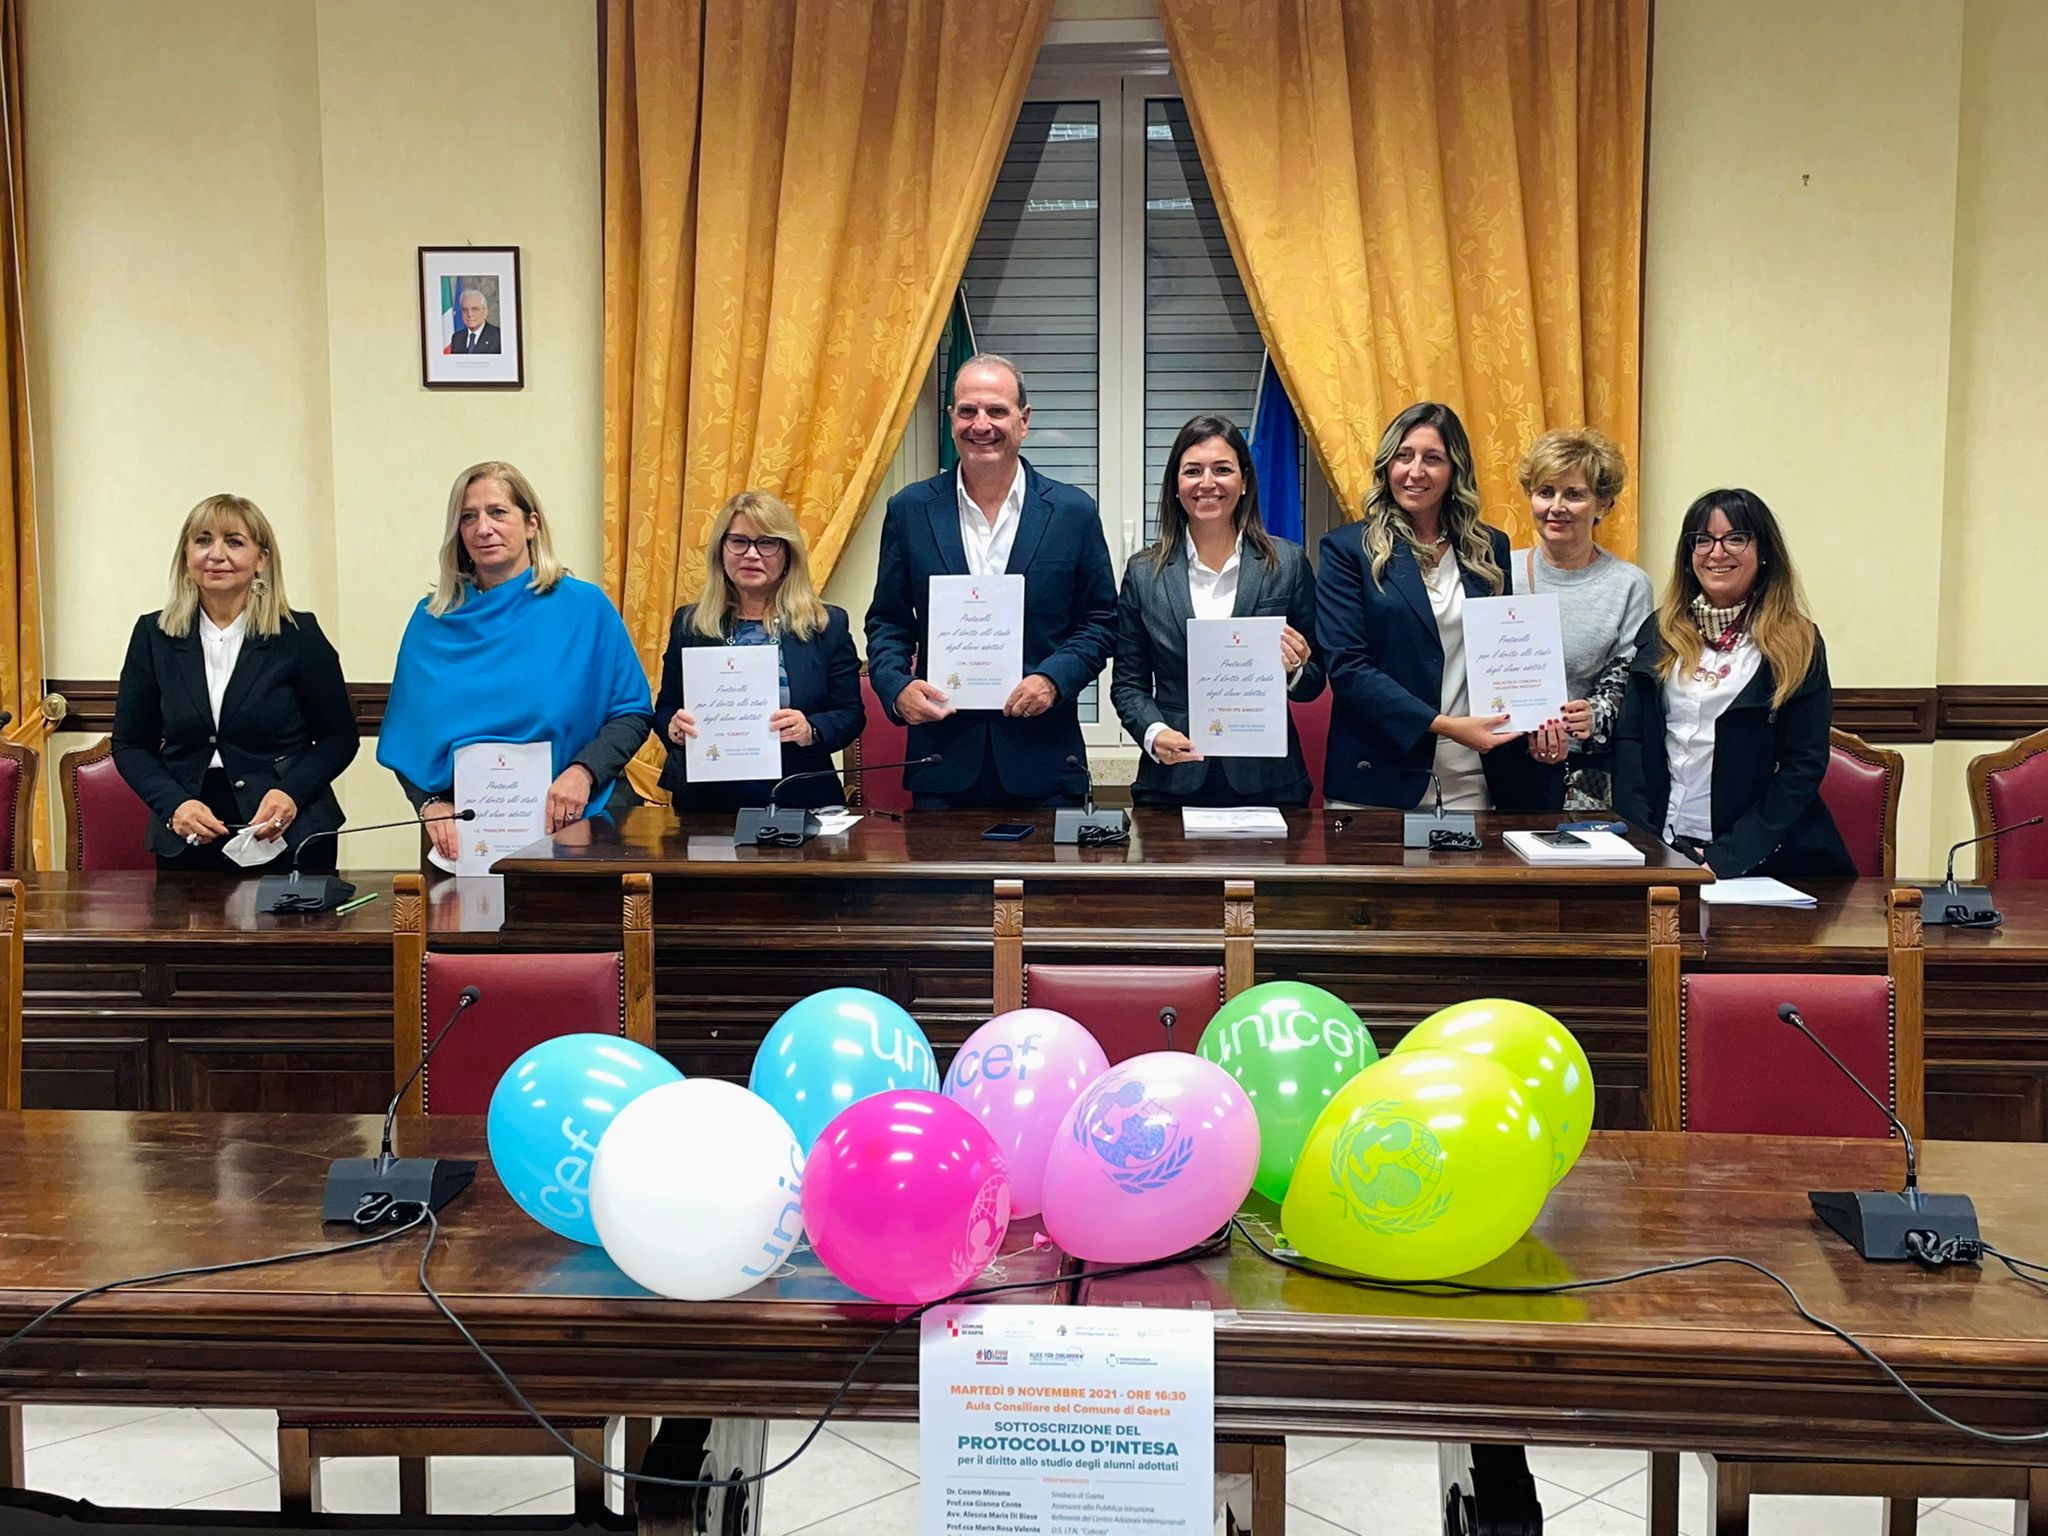 A Gaeta sottoscritto il primo protocollo per il diritto allo studio degli alunni adottati